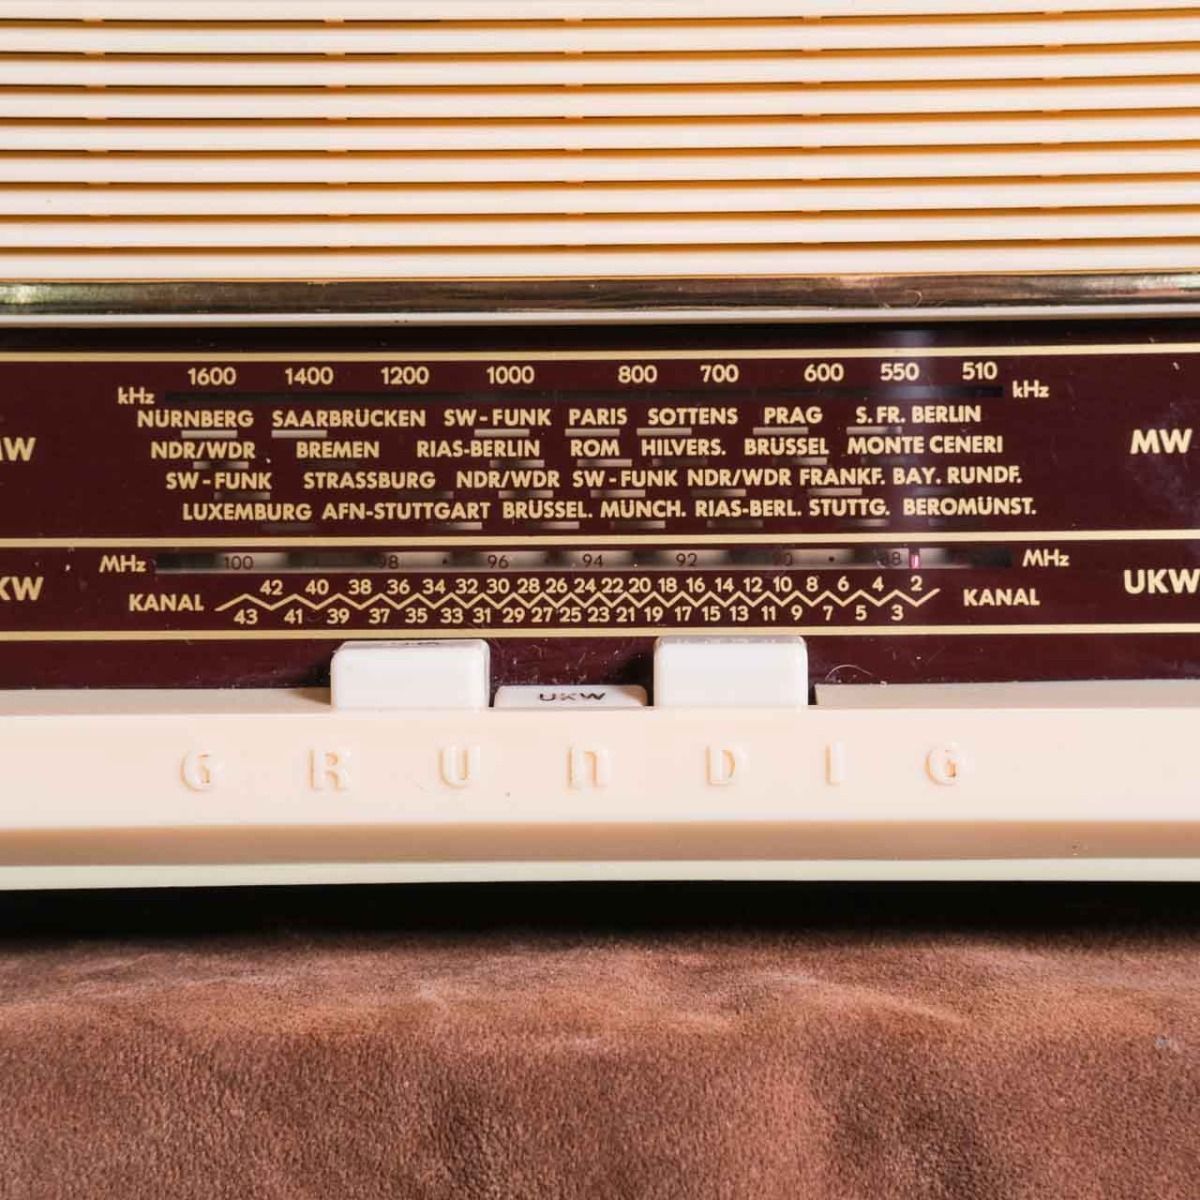 Grundig Type 88 Radio